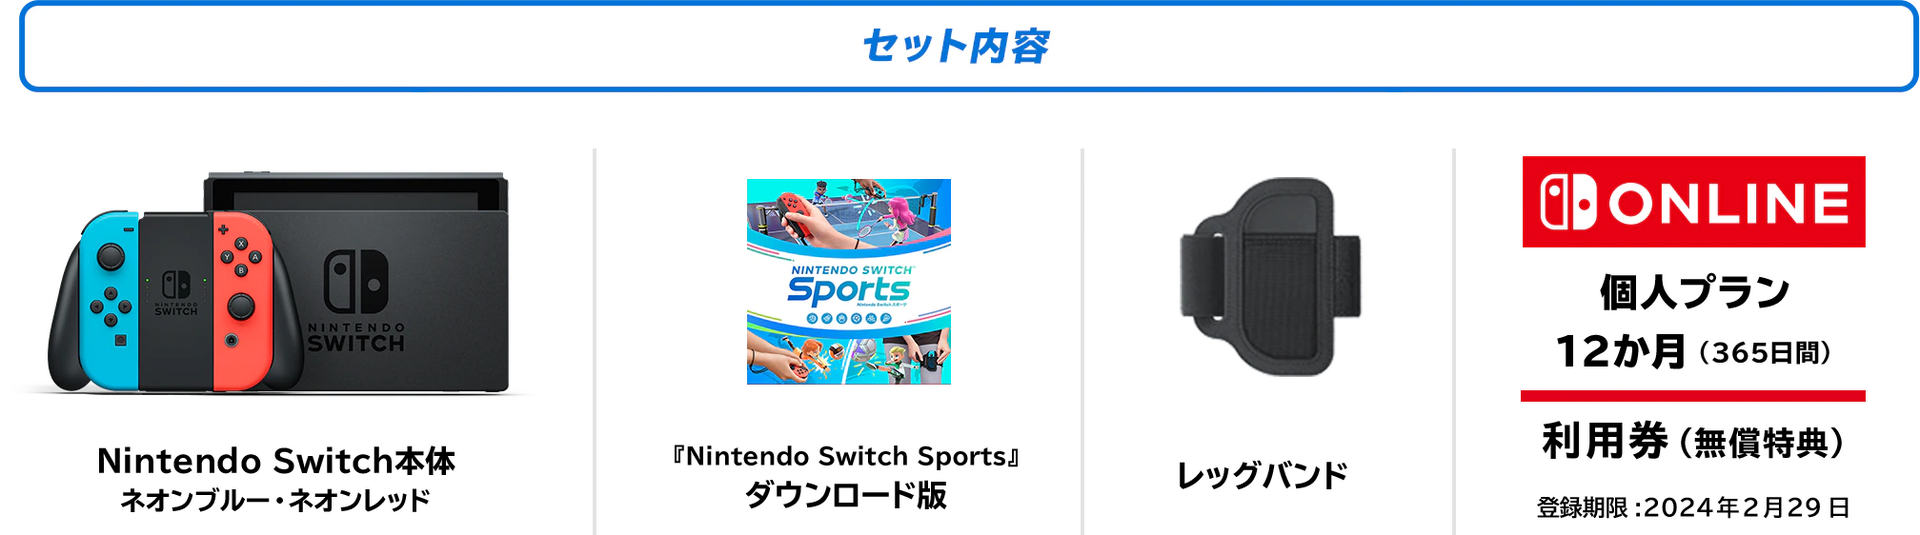 5000円お得な『Nintendo Switch Sportsセット』発売。本体とDL版に 